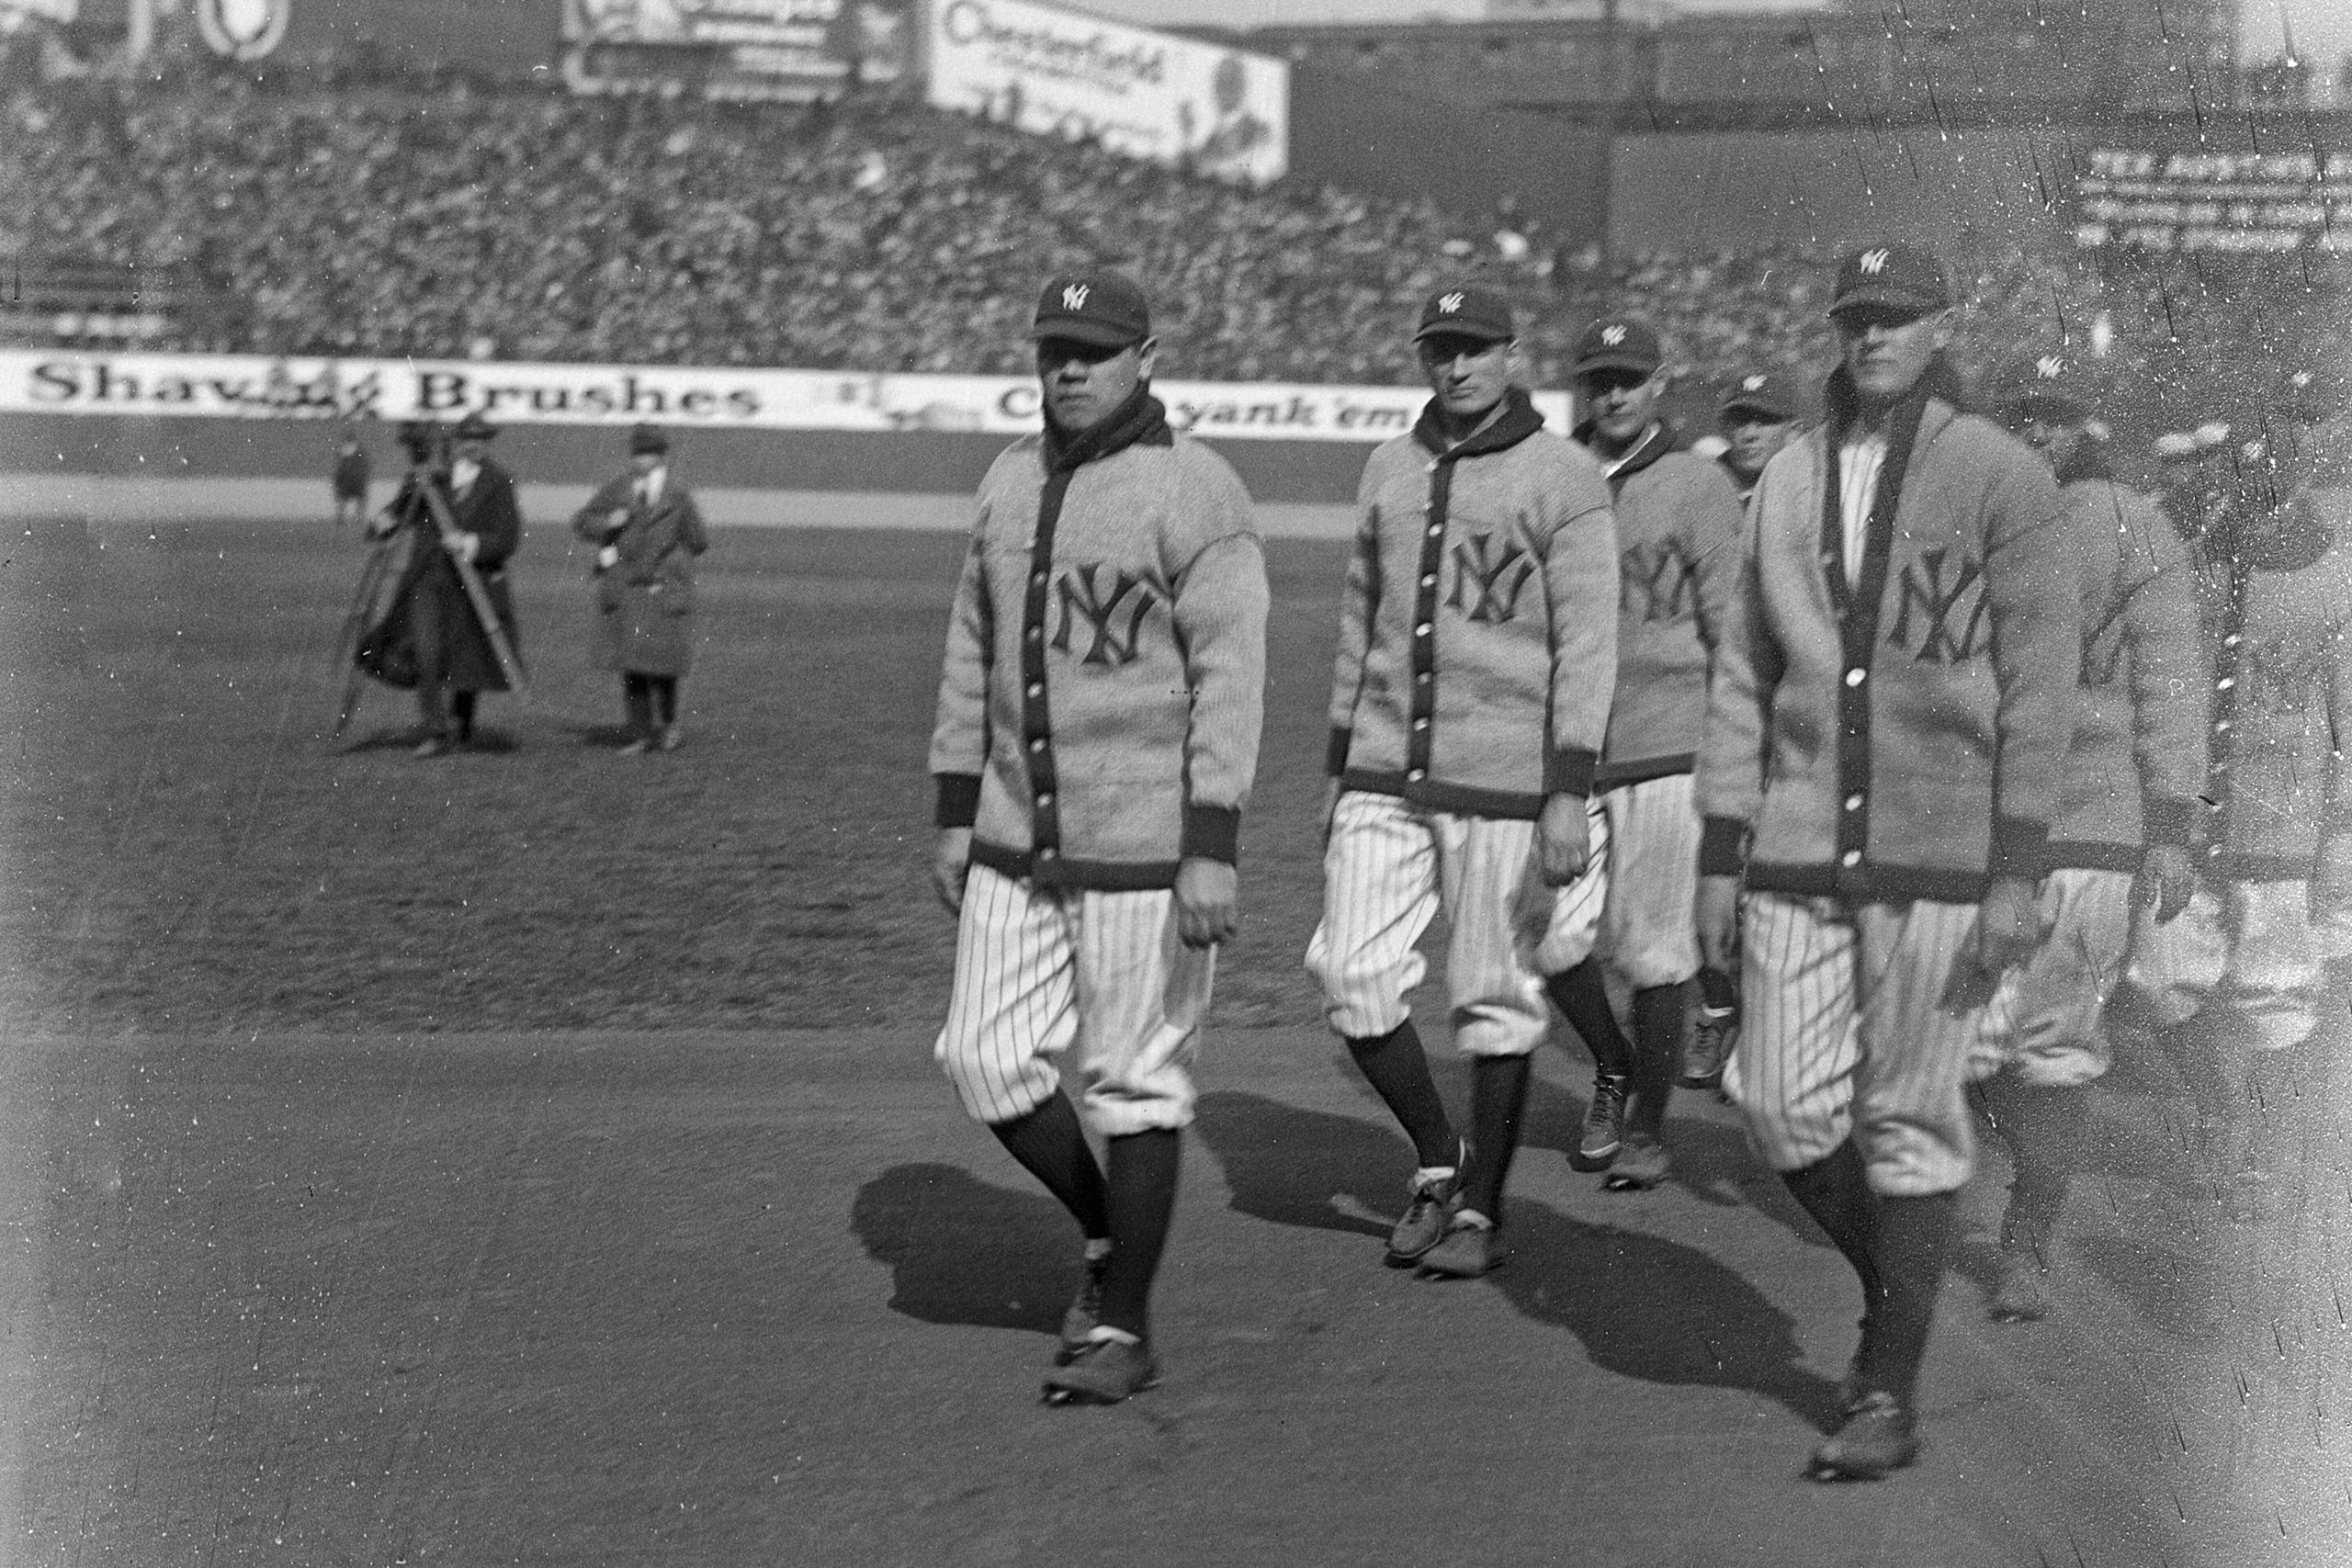 Esta foto provista por la Librería del Congreso, muestra a Babe Ruth y otros jugadores presentándose al terreno del día de la inauguración del parque el 18 de abril del 1923. (Library of Congress vía AP)